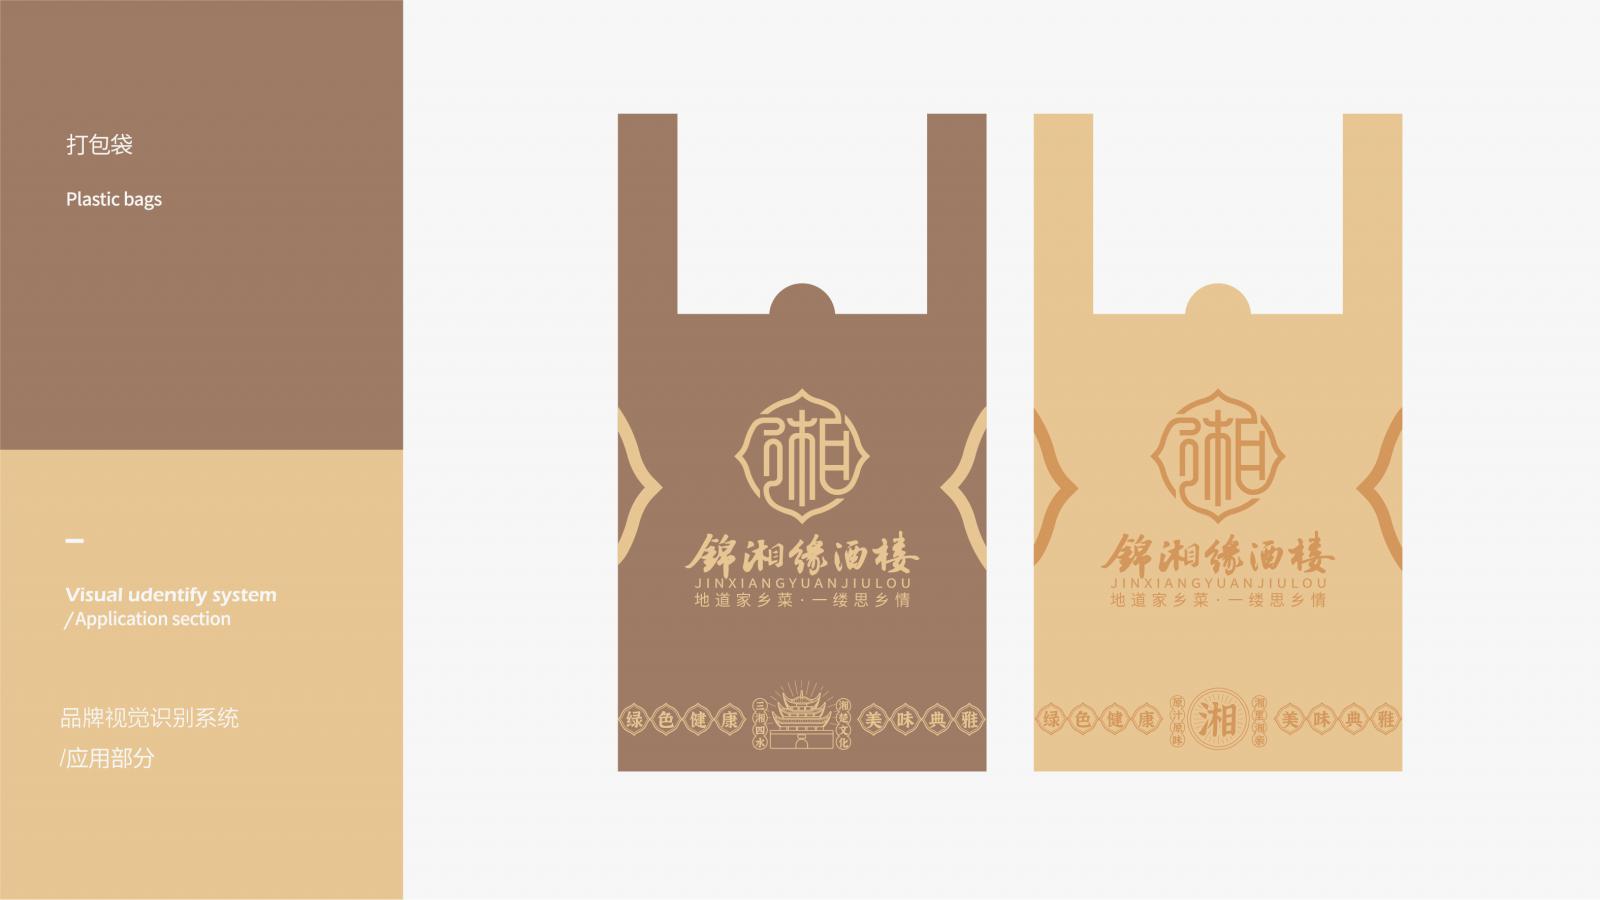 锦湘缘-餐饮品牌VI设计 上海餐饮VI设计 餐饮VI设计 上海餐饮VI设计公司 第9张